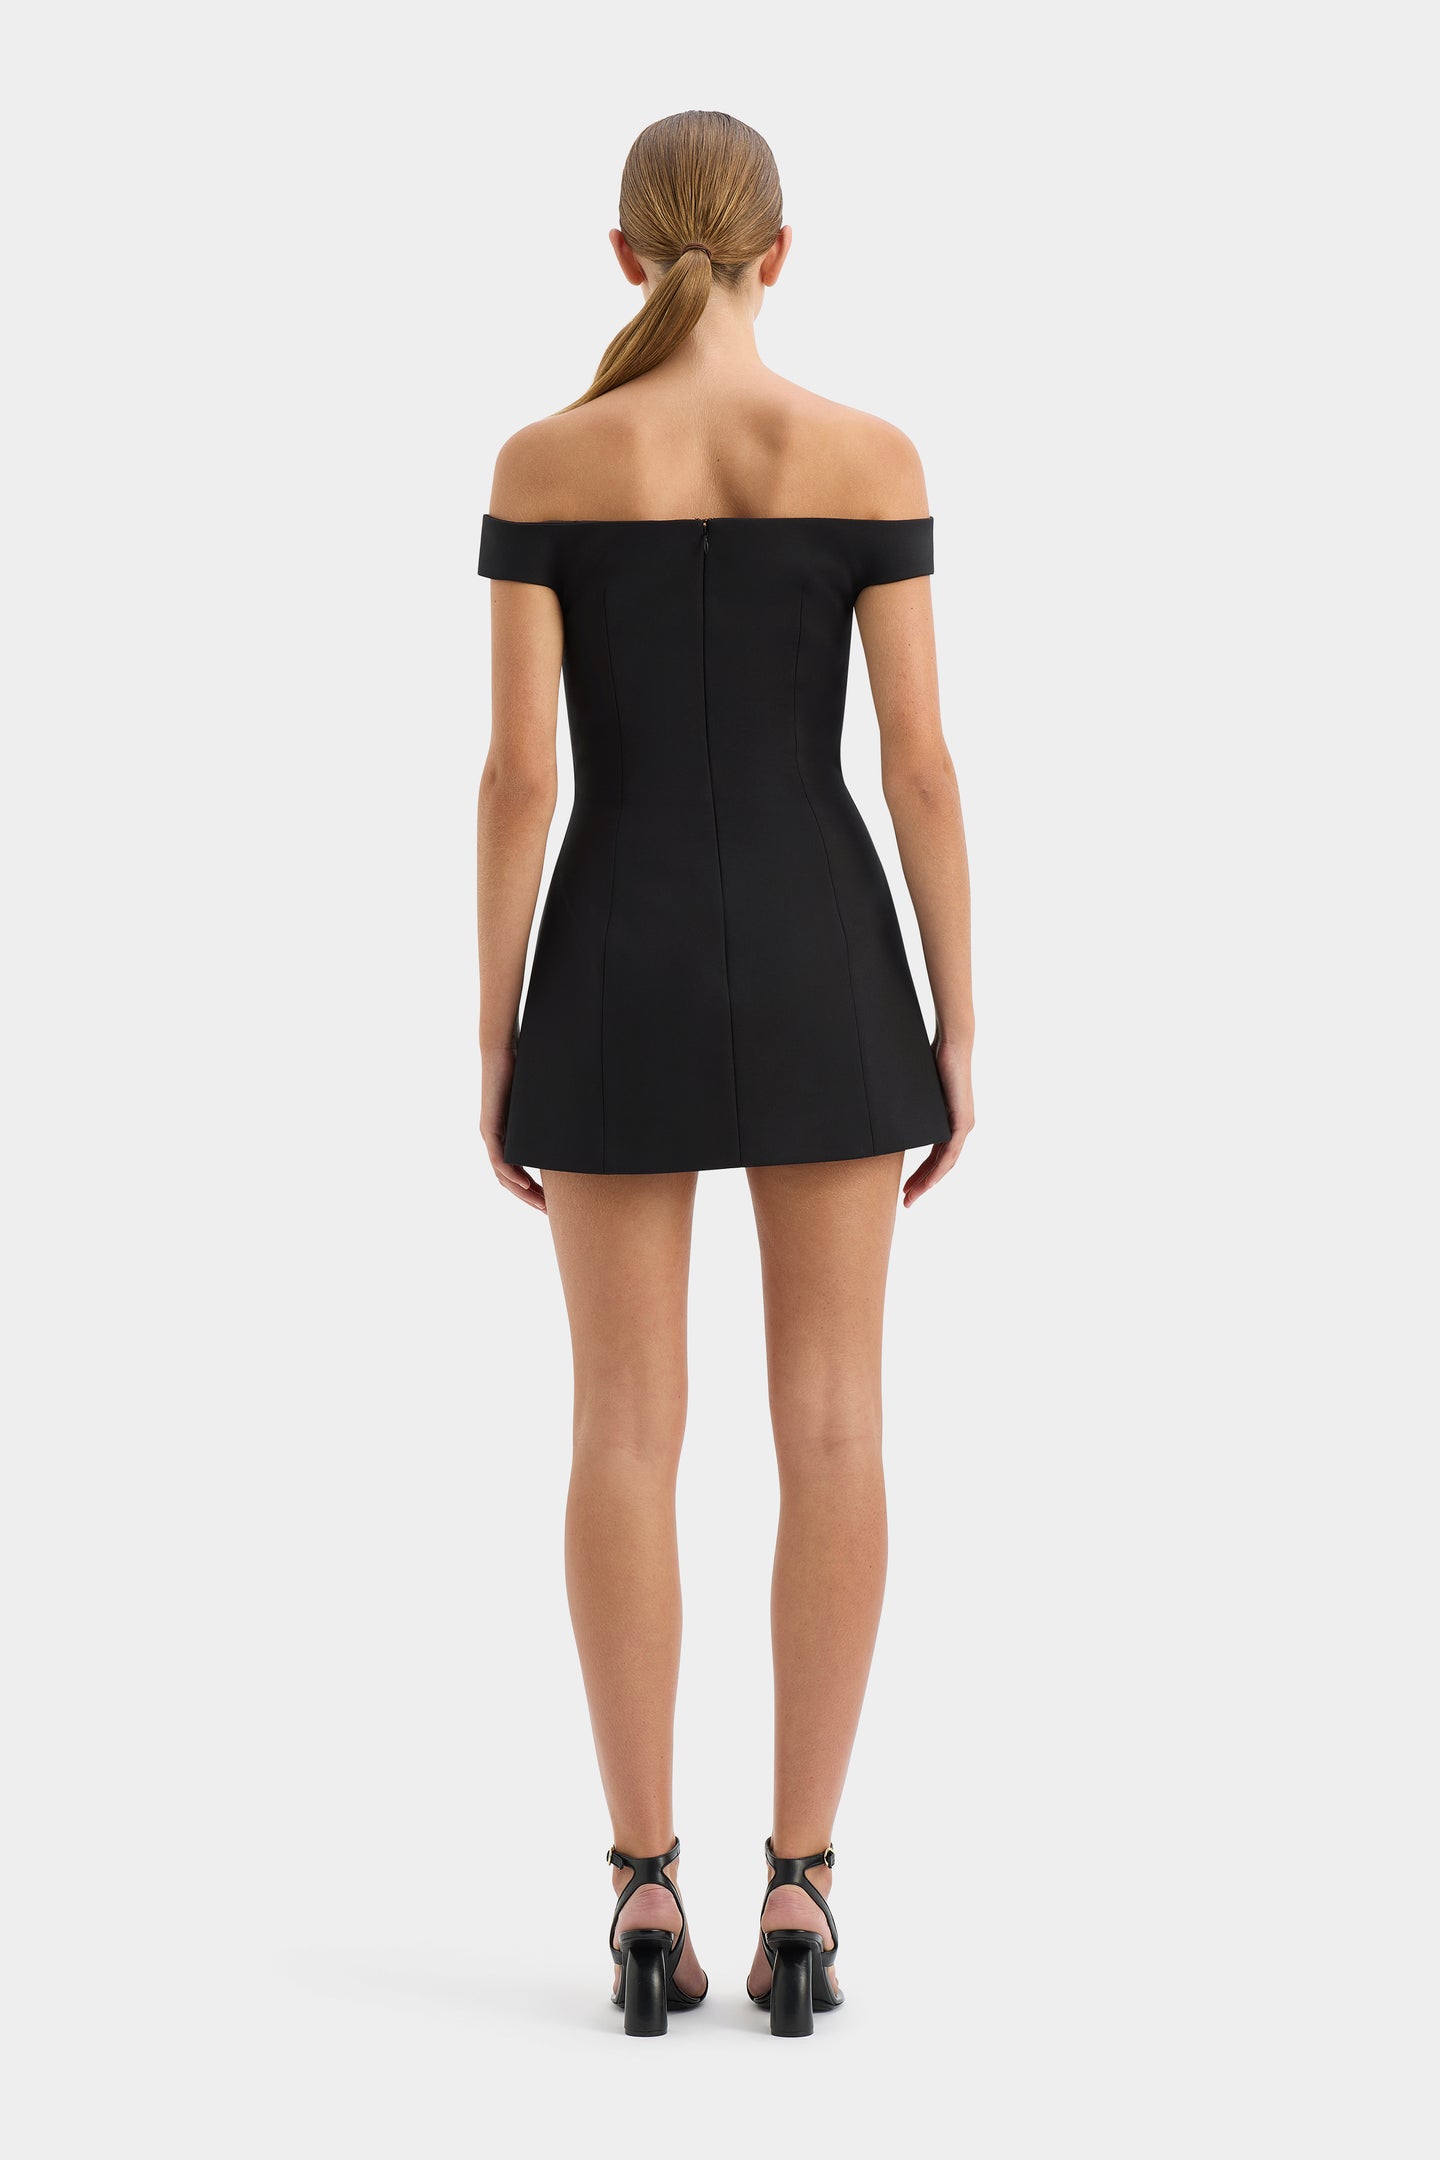 SIR the label Sandrine Off Shoulder Mini Dress BLACK